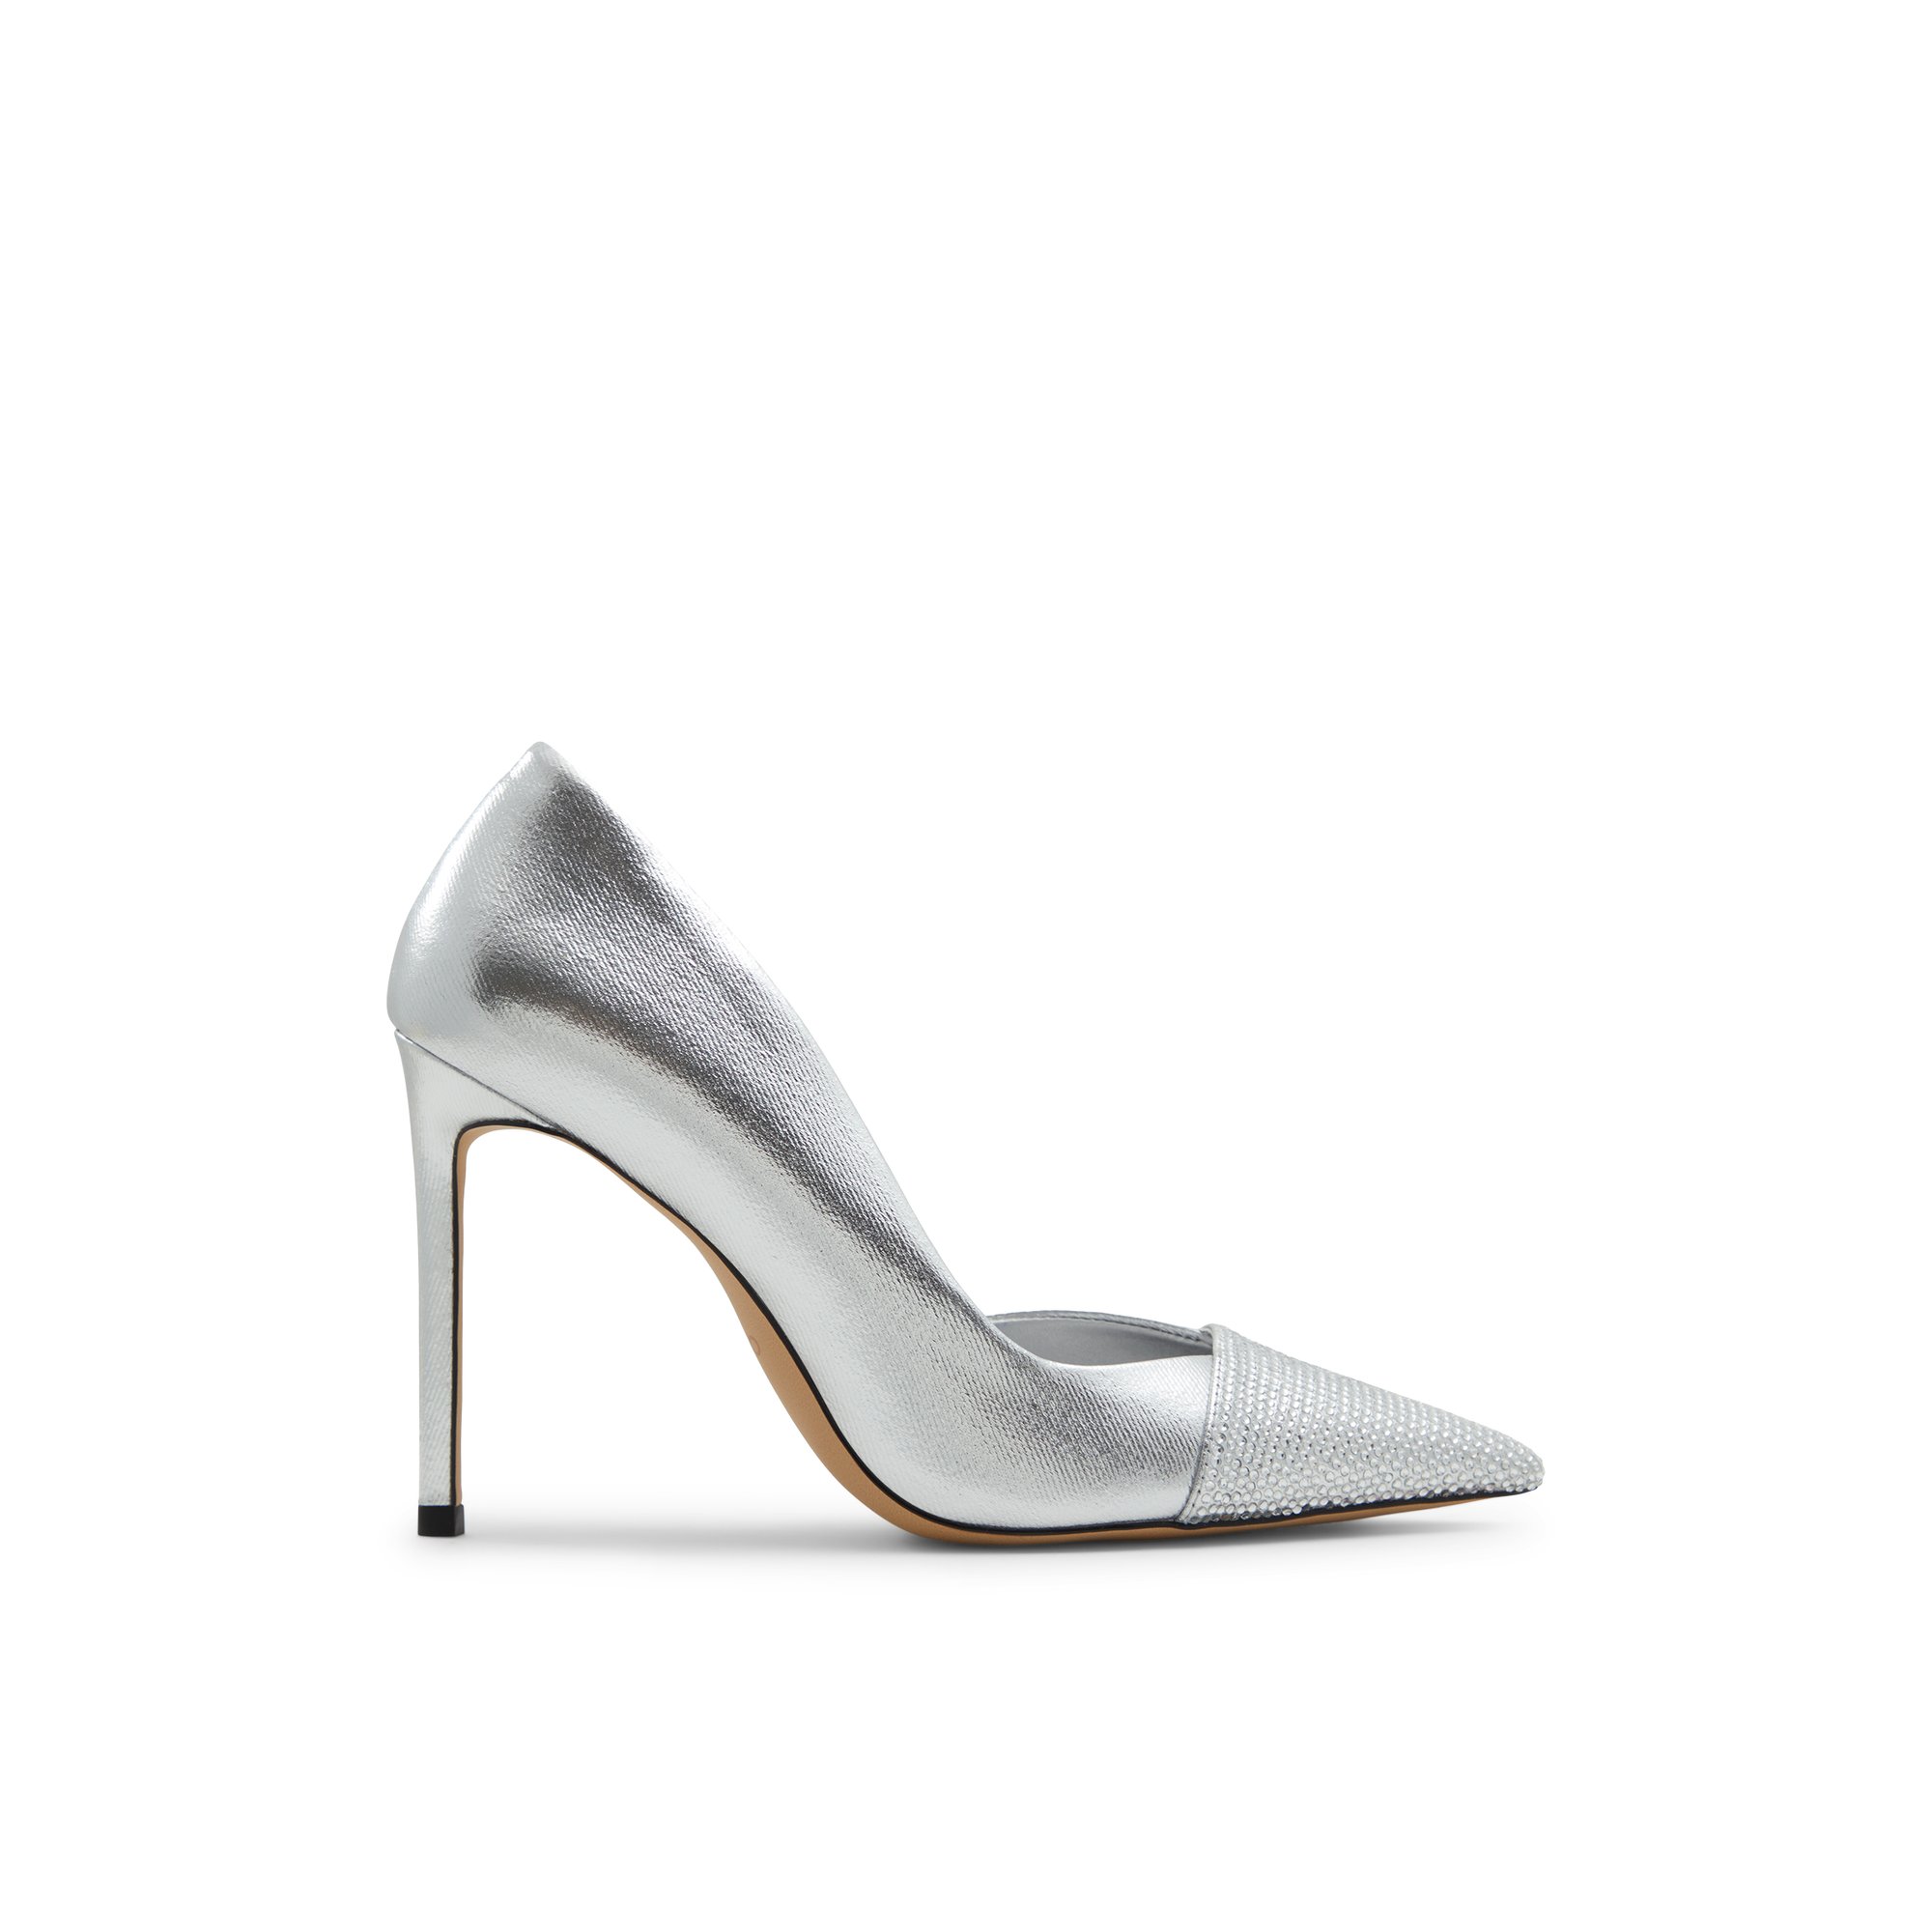 ALDO Mazy - Women's Heels - Silver